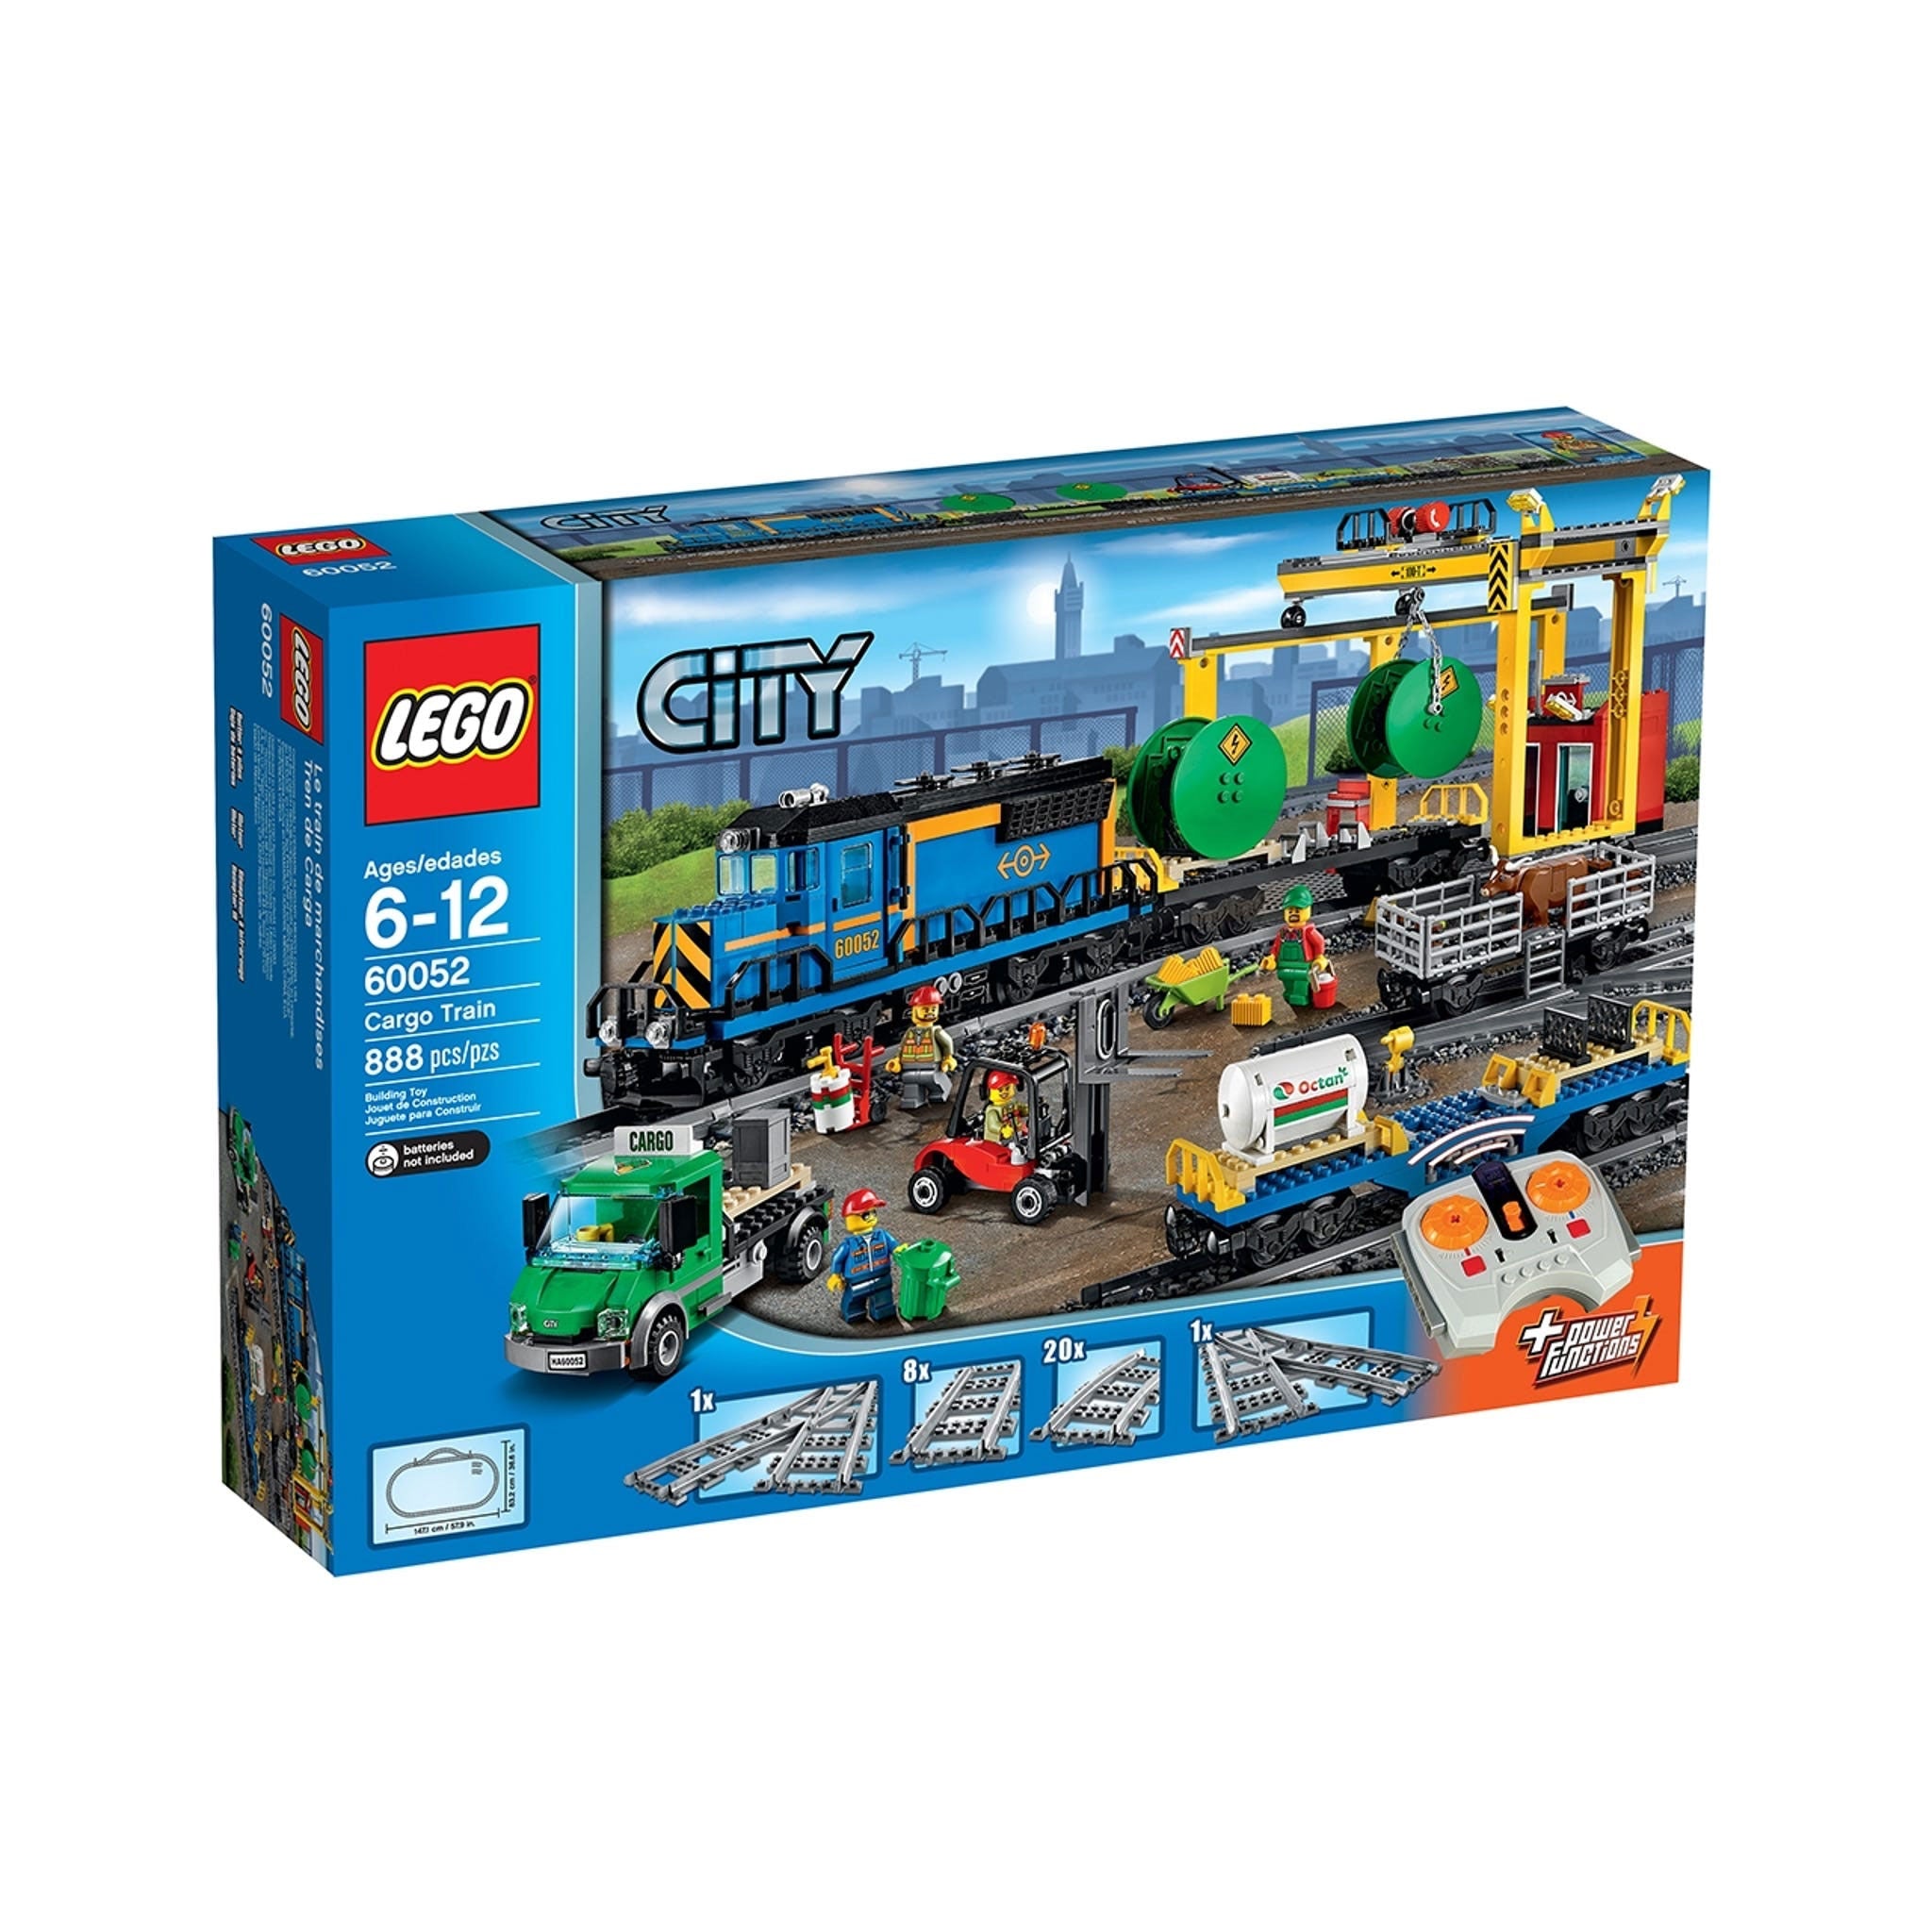 LEGO City Güterzug (60052) - im GOLDSTIEN.SHOP verfügbar mit Gratisversand ab Schweizer Lager! (5702015119337)